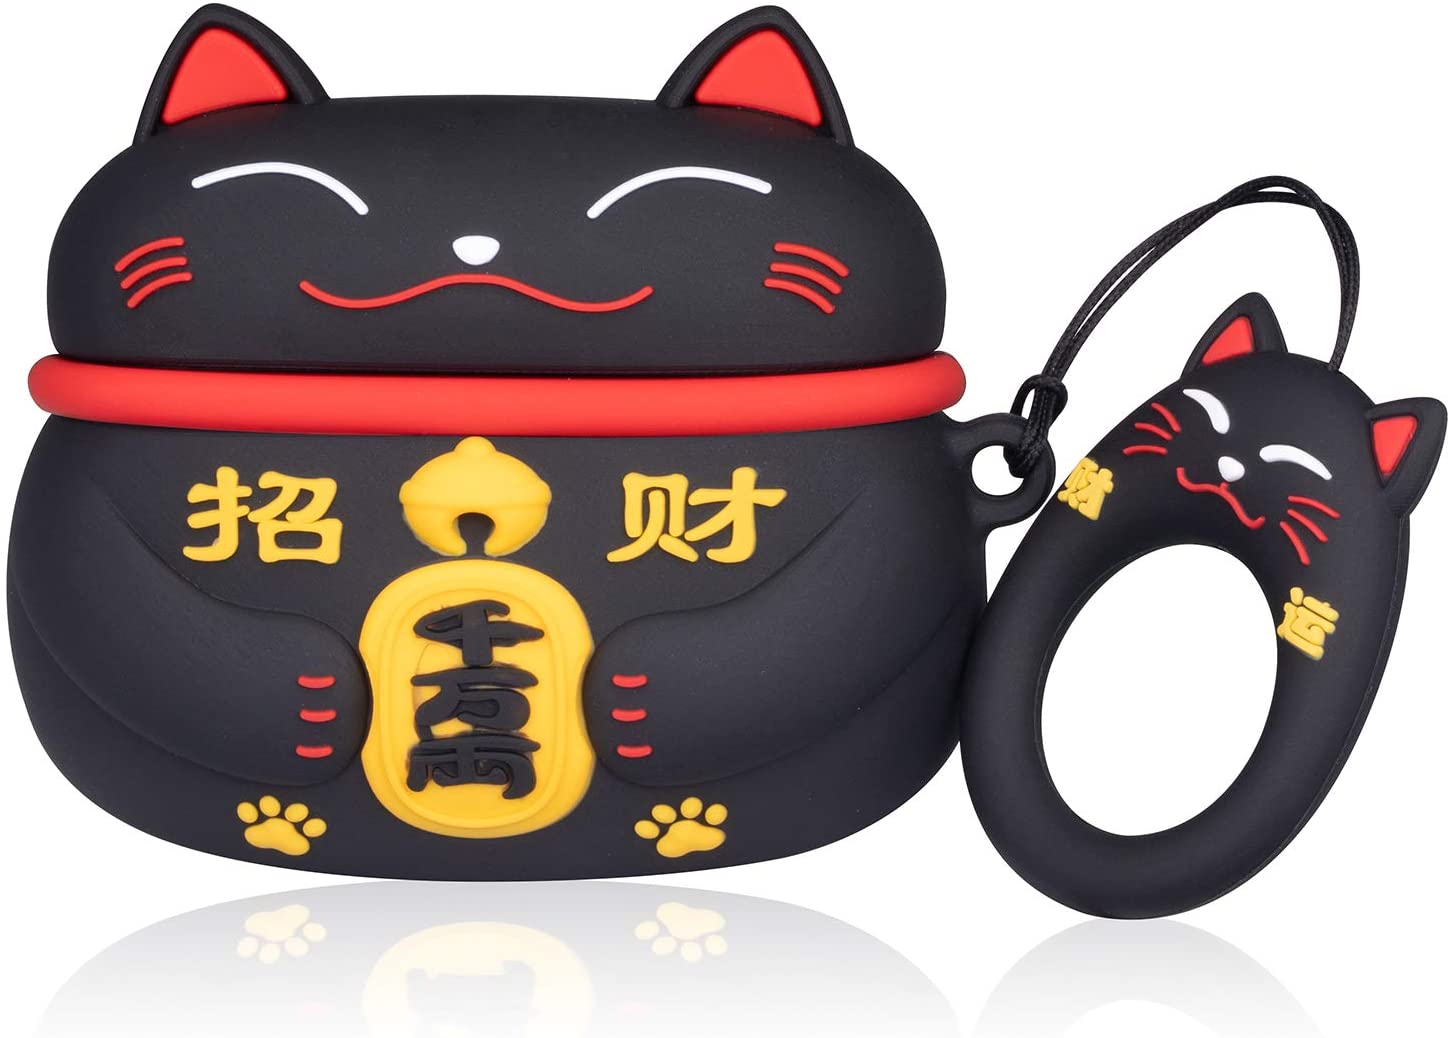 Black Maneki-neko Lucky Cat Airpods Case - 0